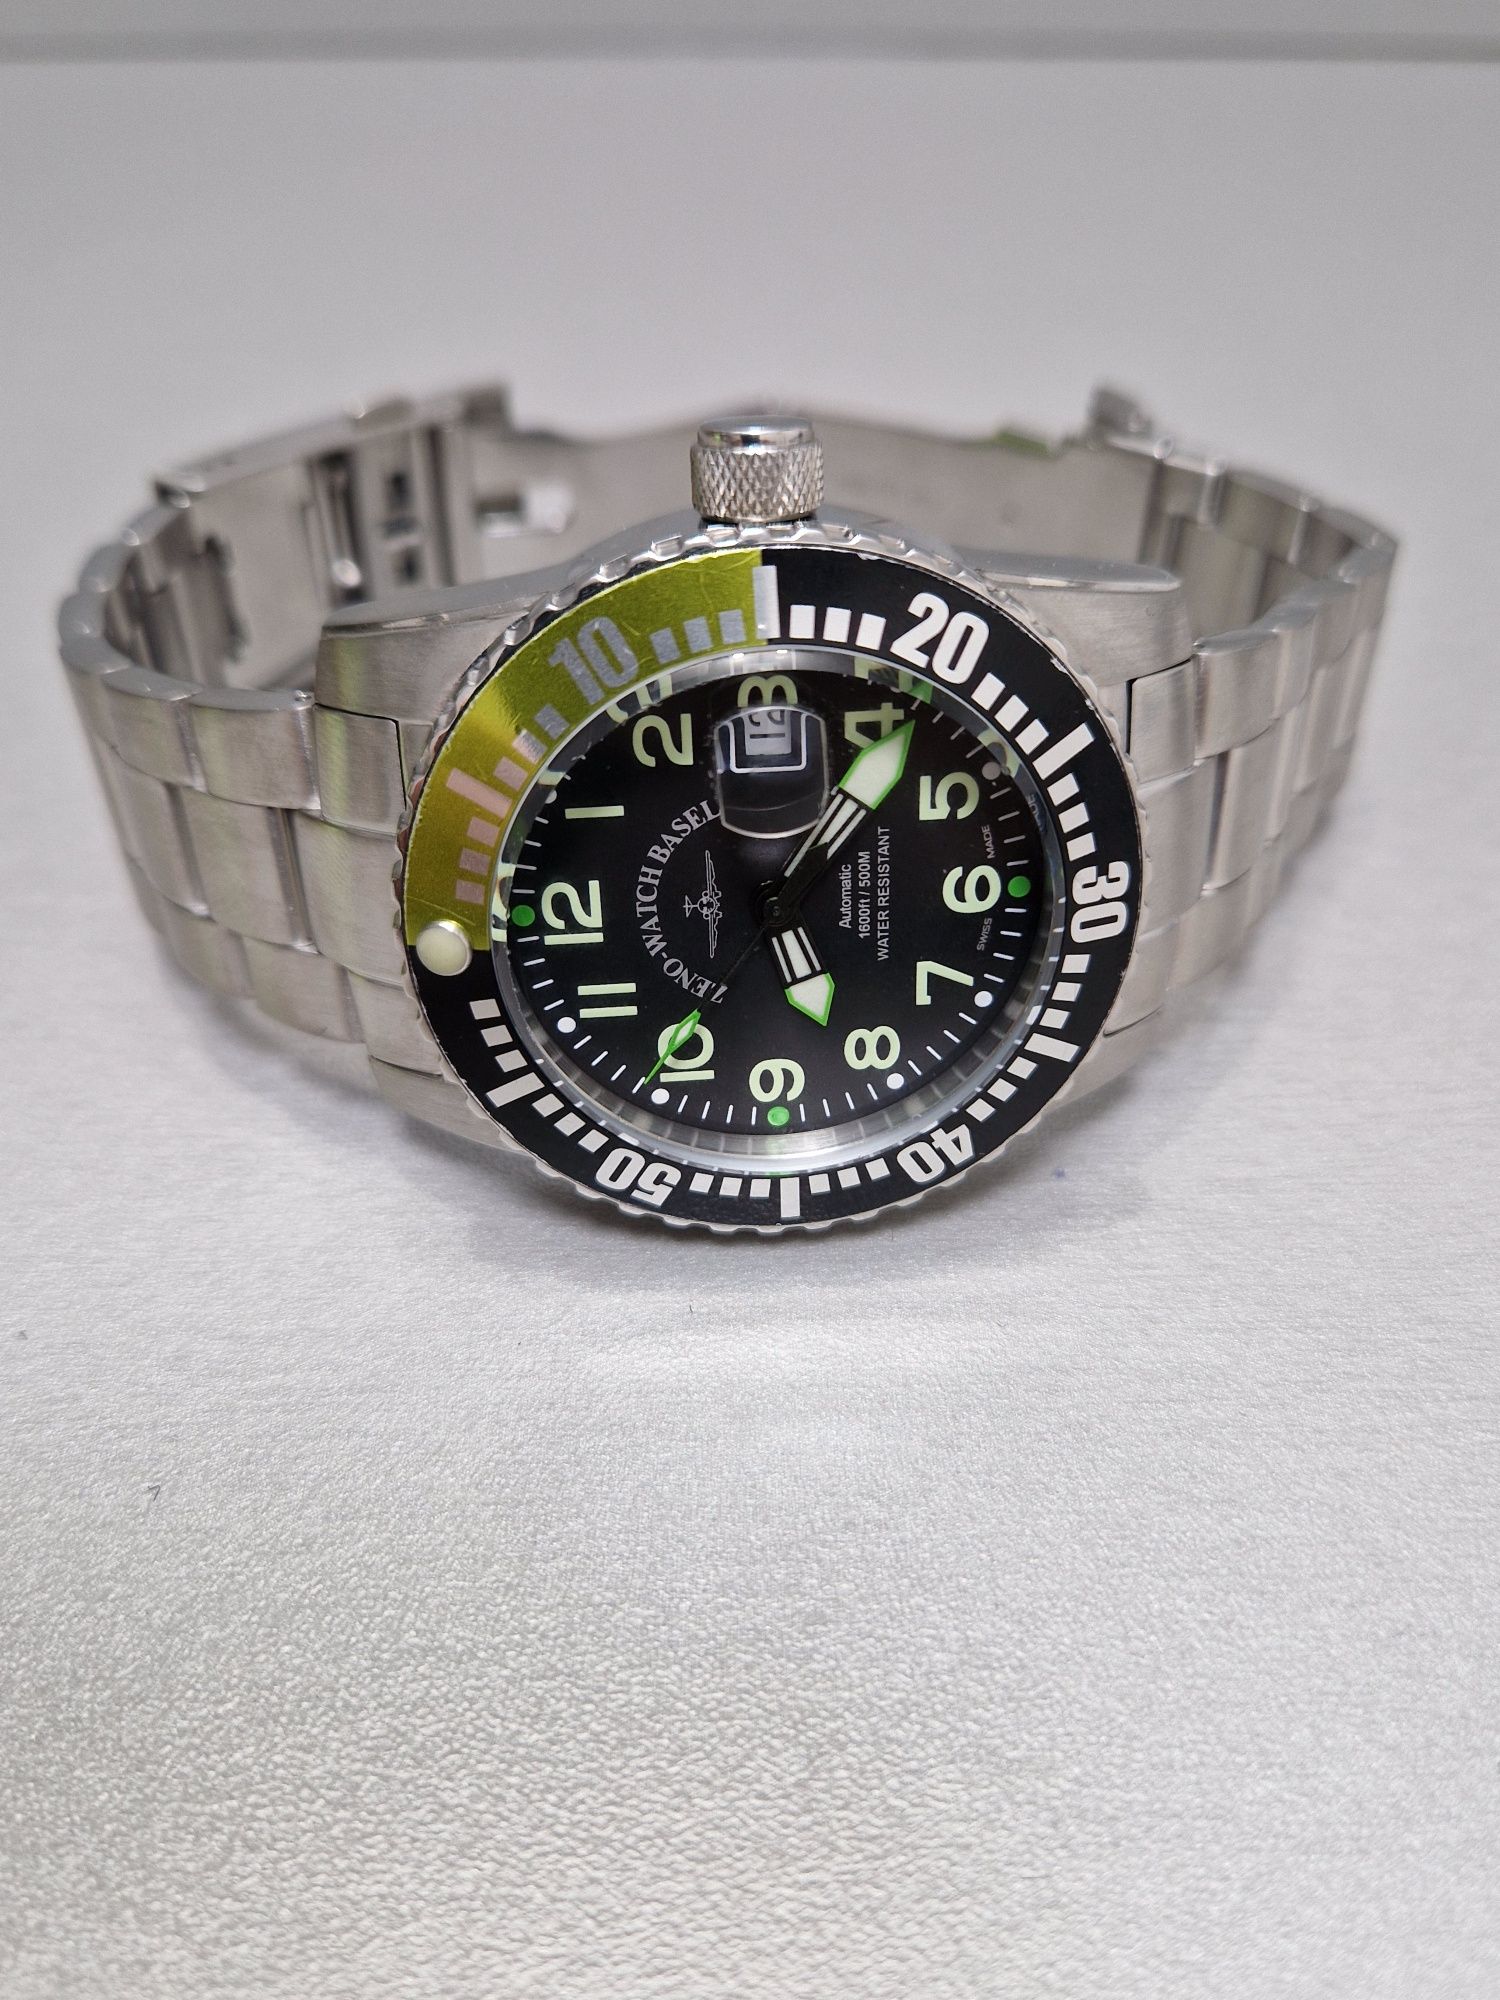 Zeno-watch basel automatic